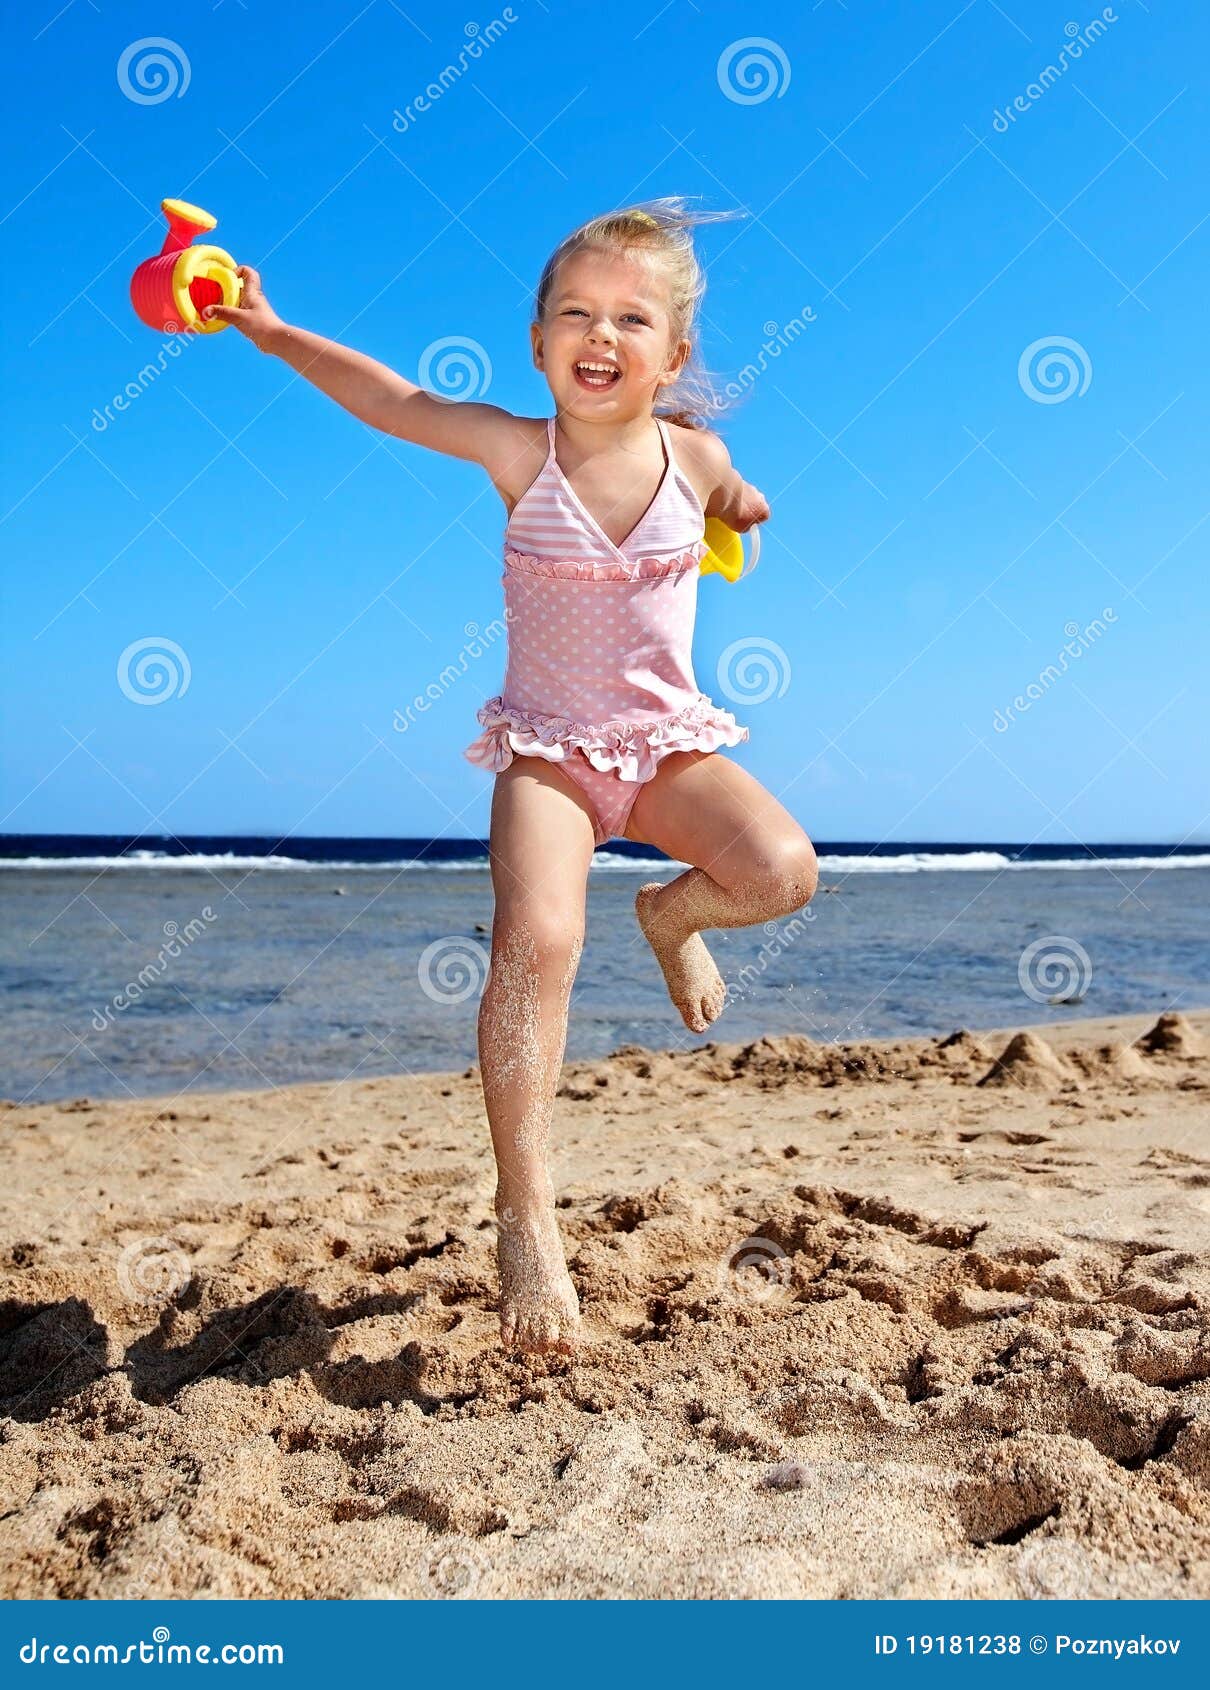 фото детей на голом пляже фото 29